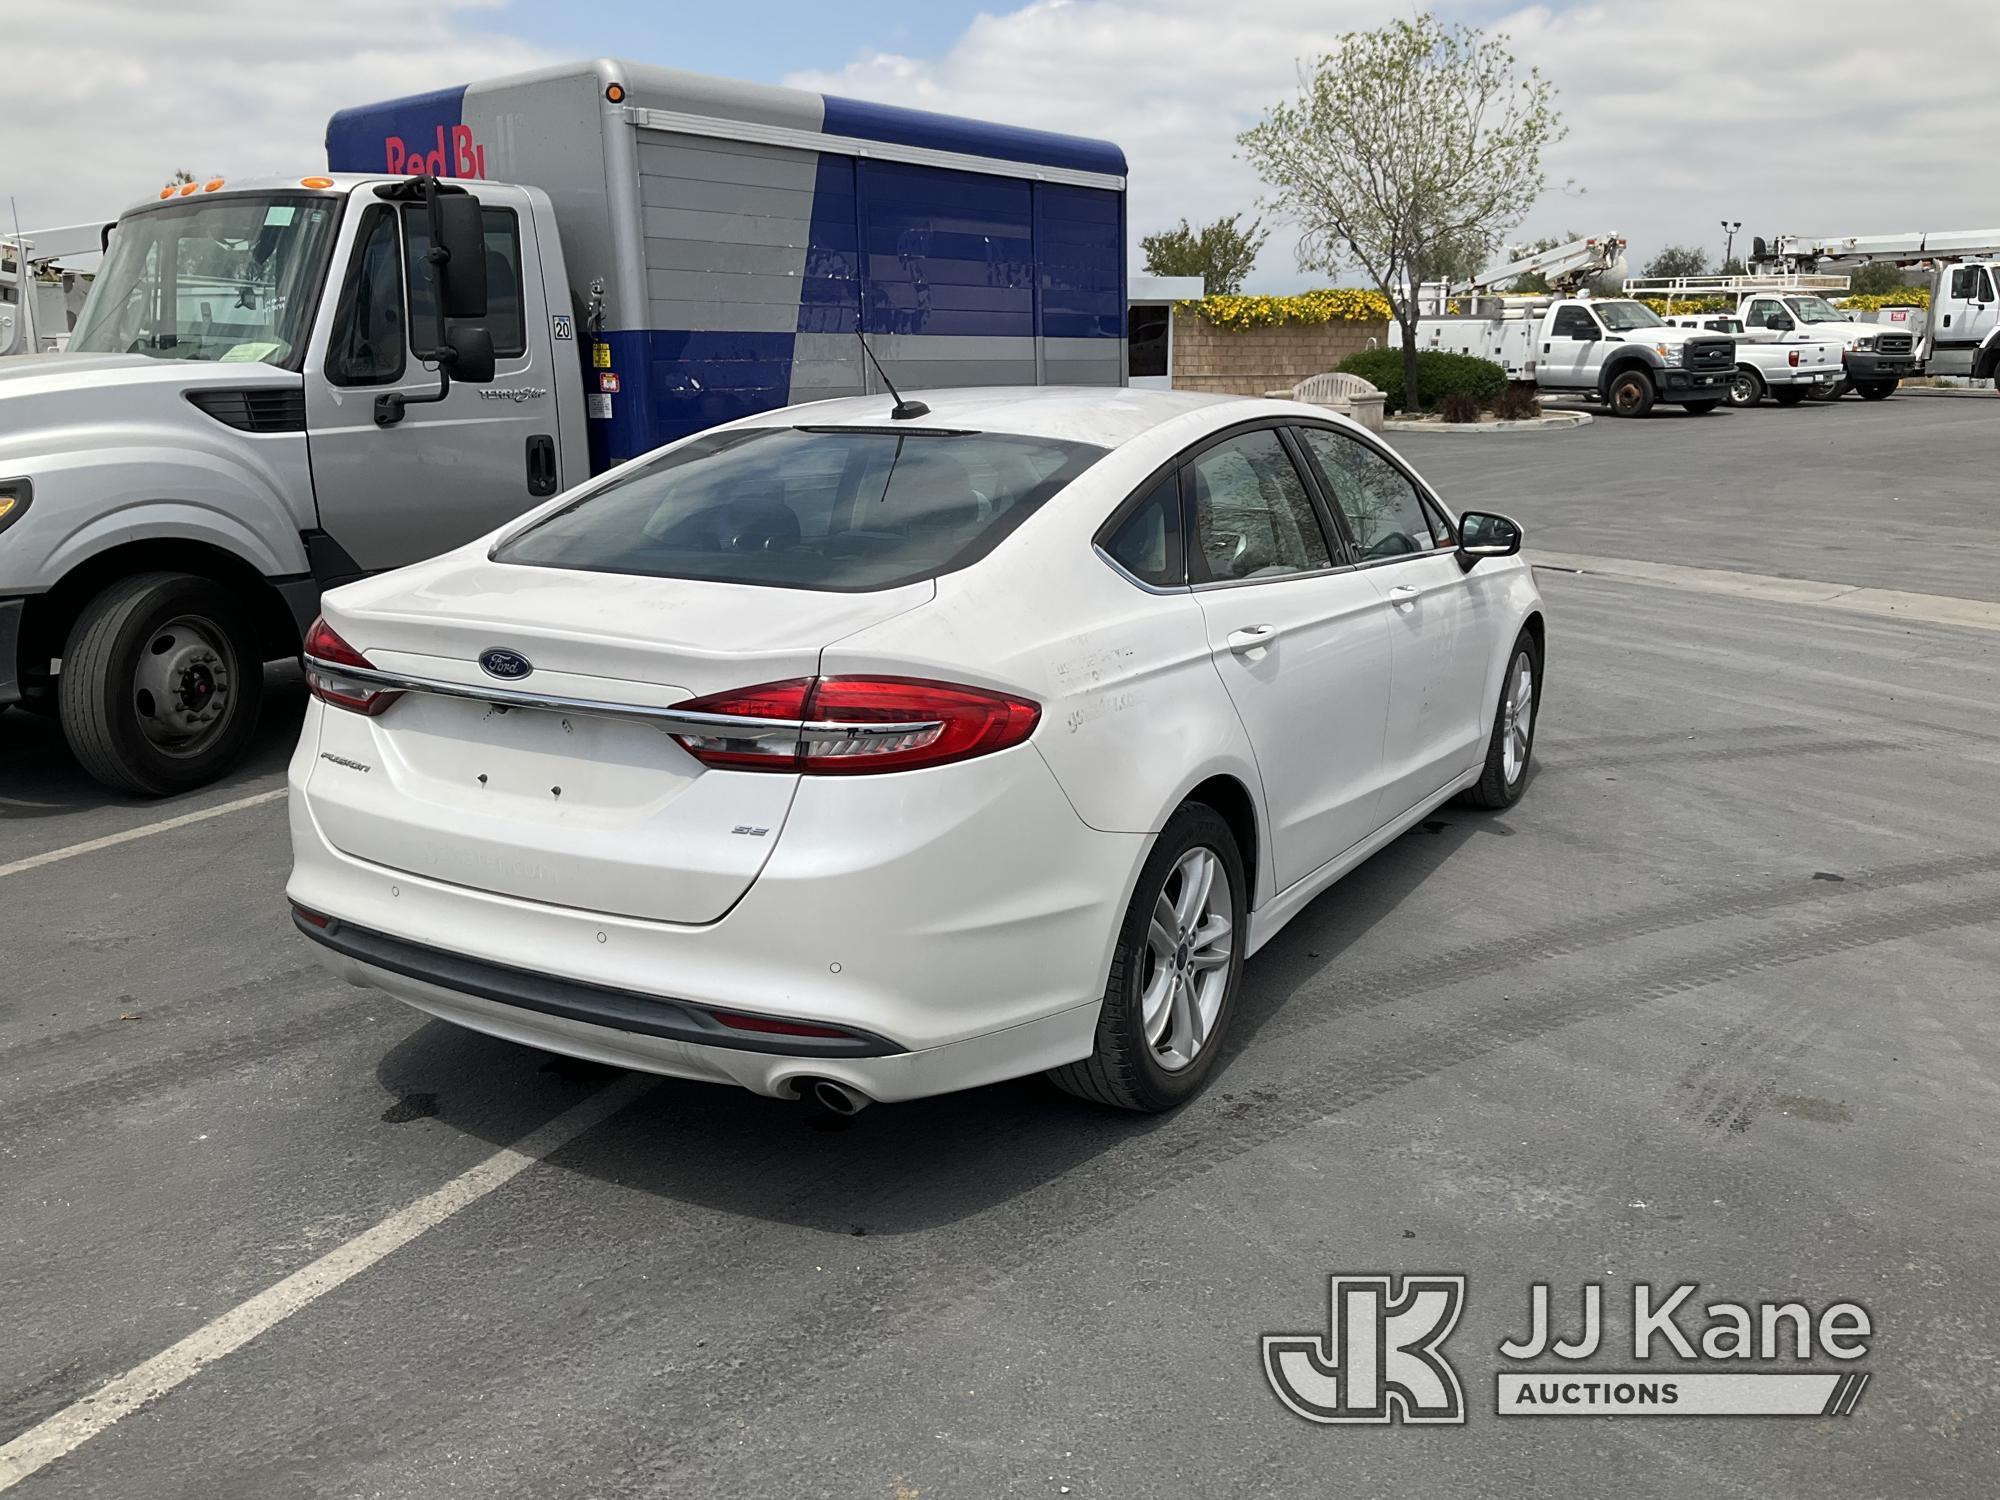 (Jurupa Valley, CA) 2018 Ford Fusion 4-Door Sedan Runs & Moves